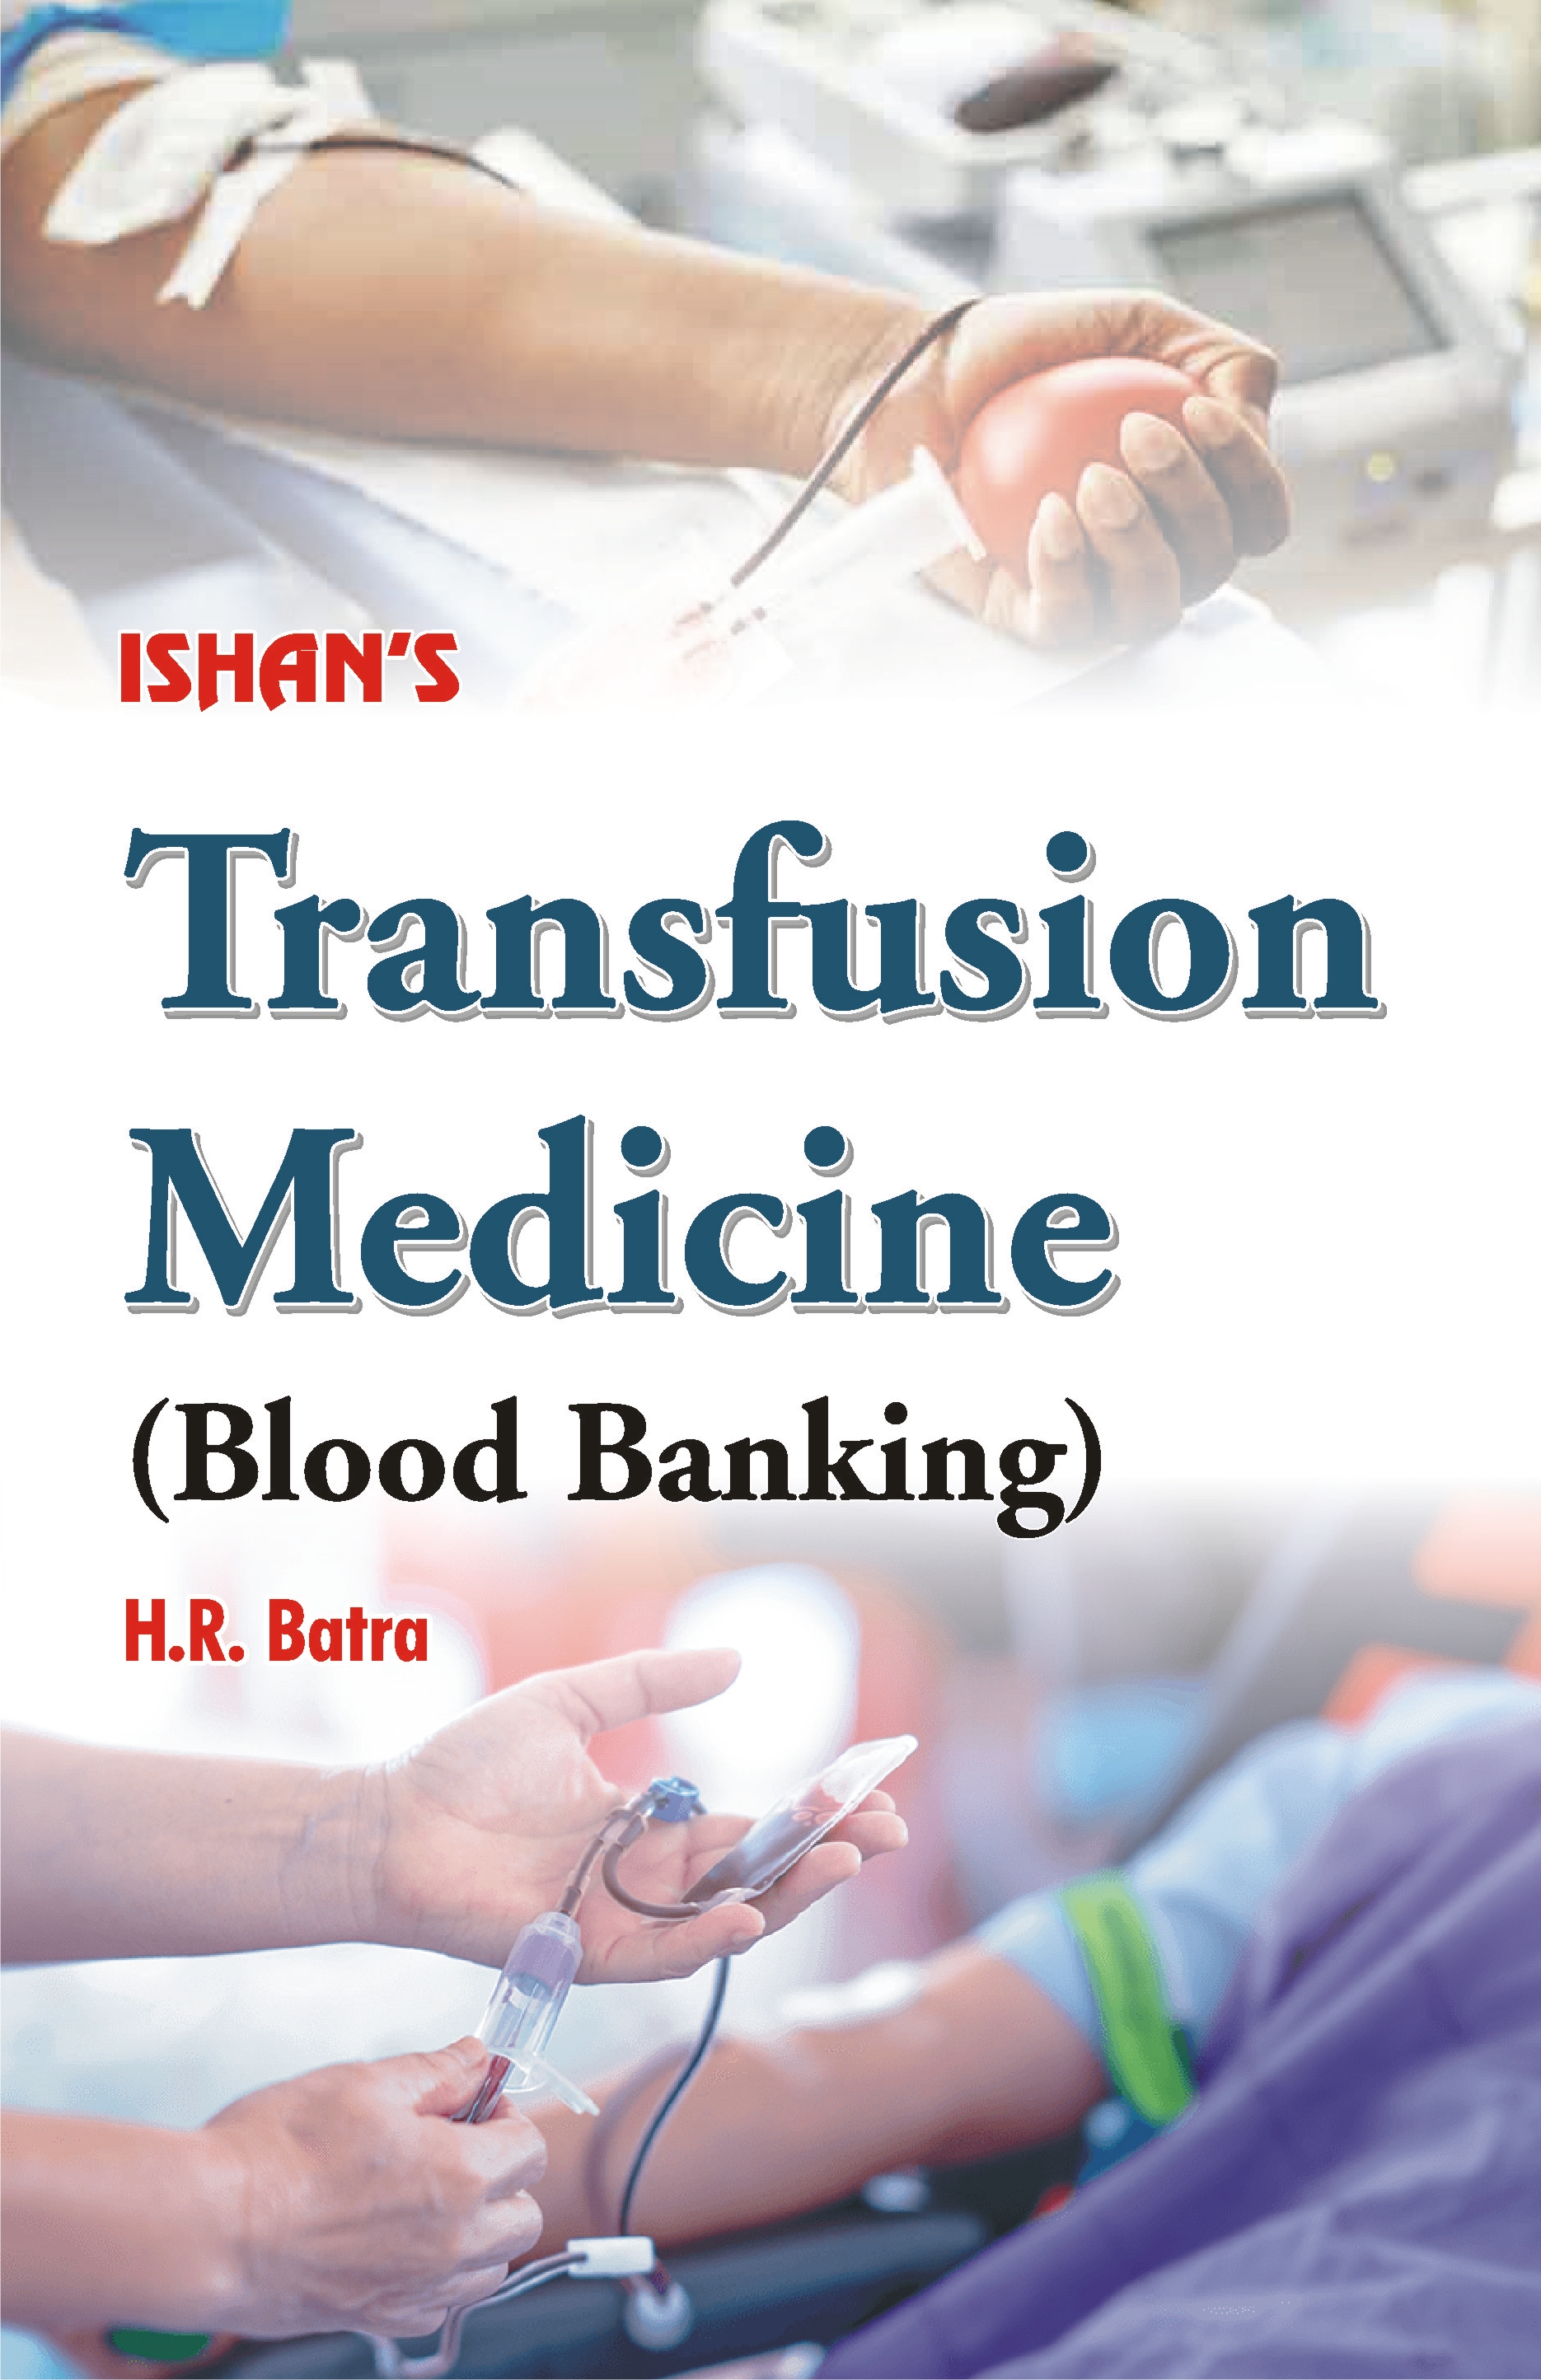 Transfusion Medicines